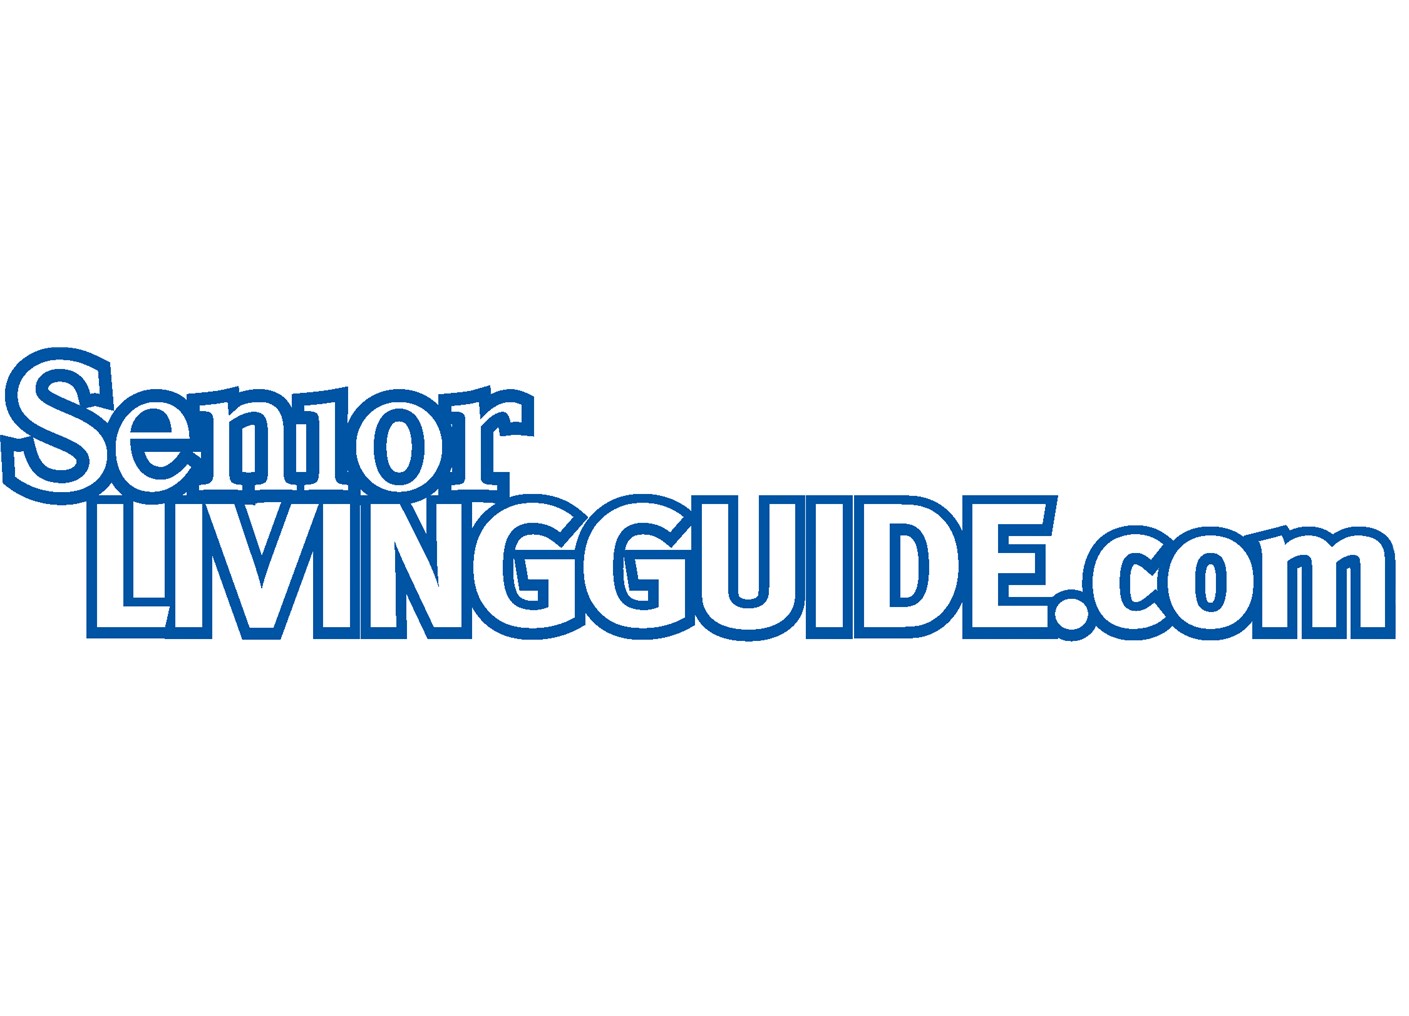 Senior Living Guide